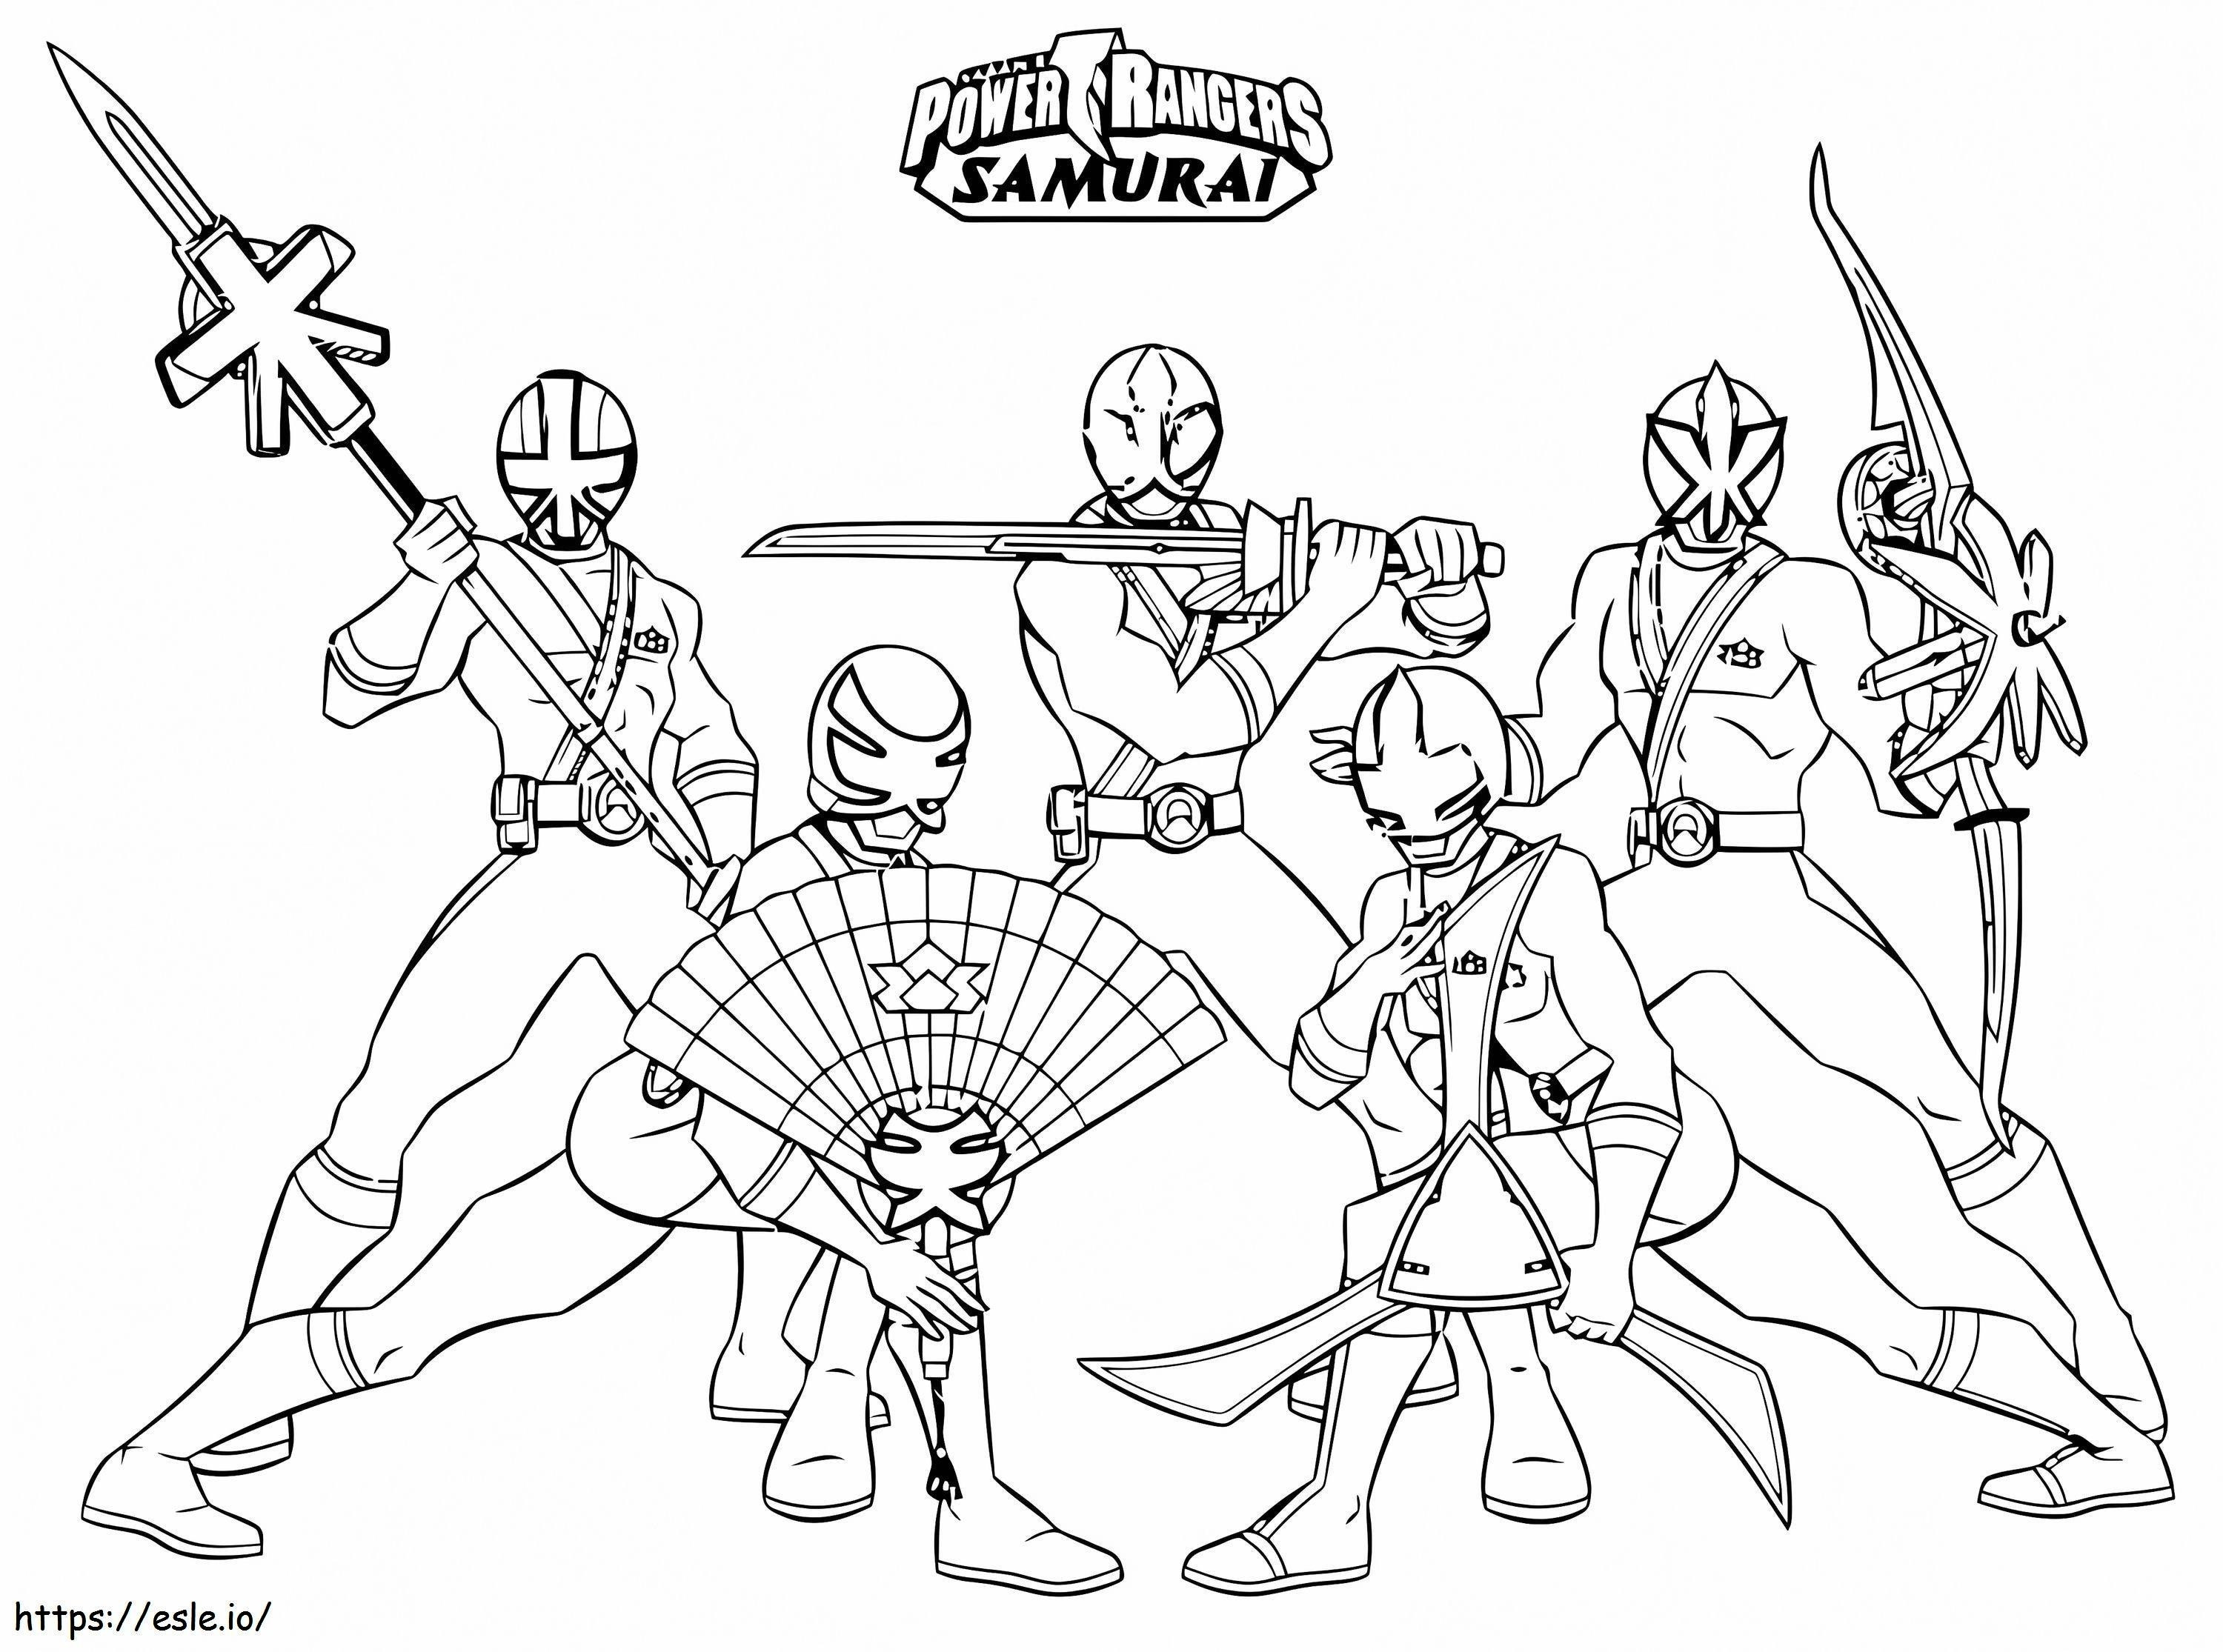 1542765316 Vaikuttava Power Rangers Samurai Online pojille tulostettavaksi ilmaiseksi värityskuva